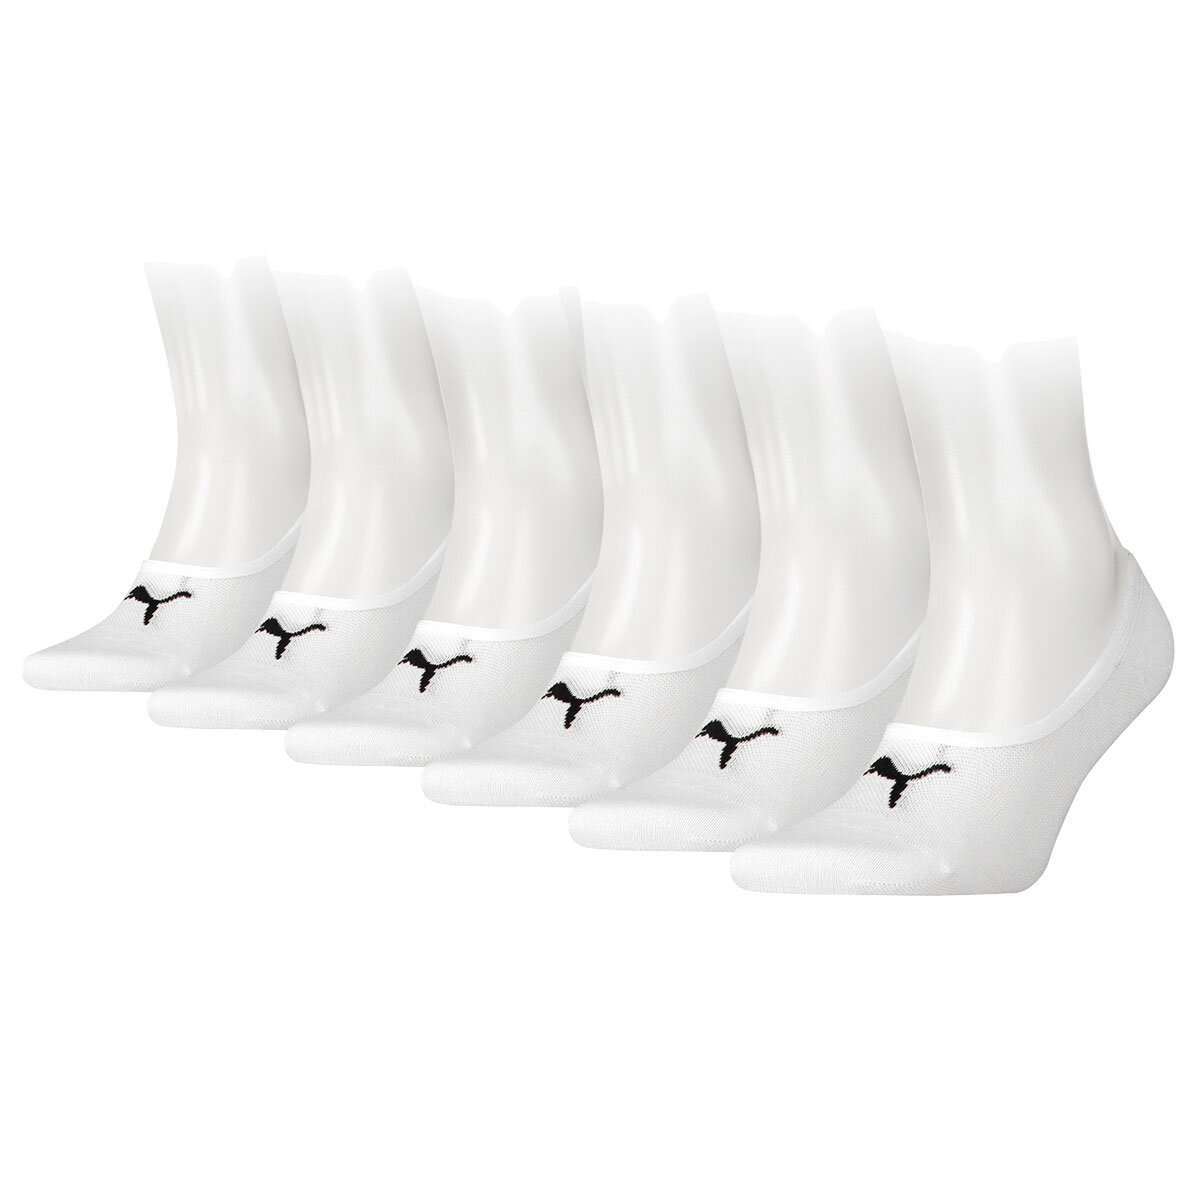 Puma Men's Hidden Sock 6 Pack in White